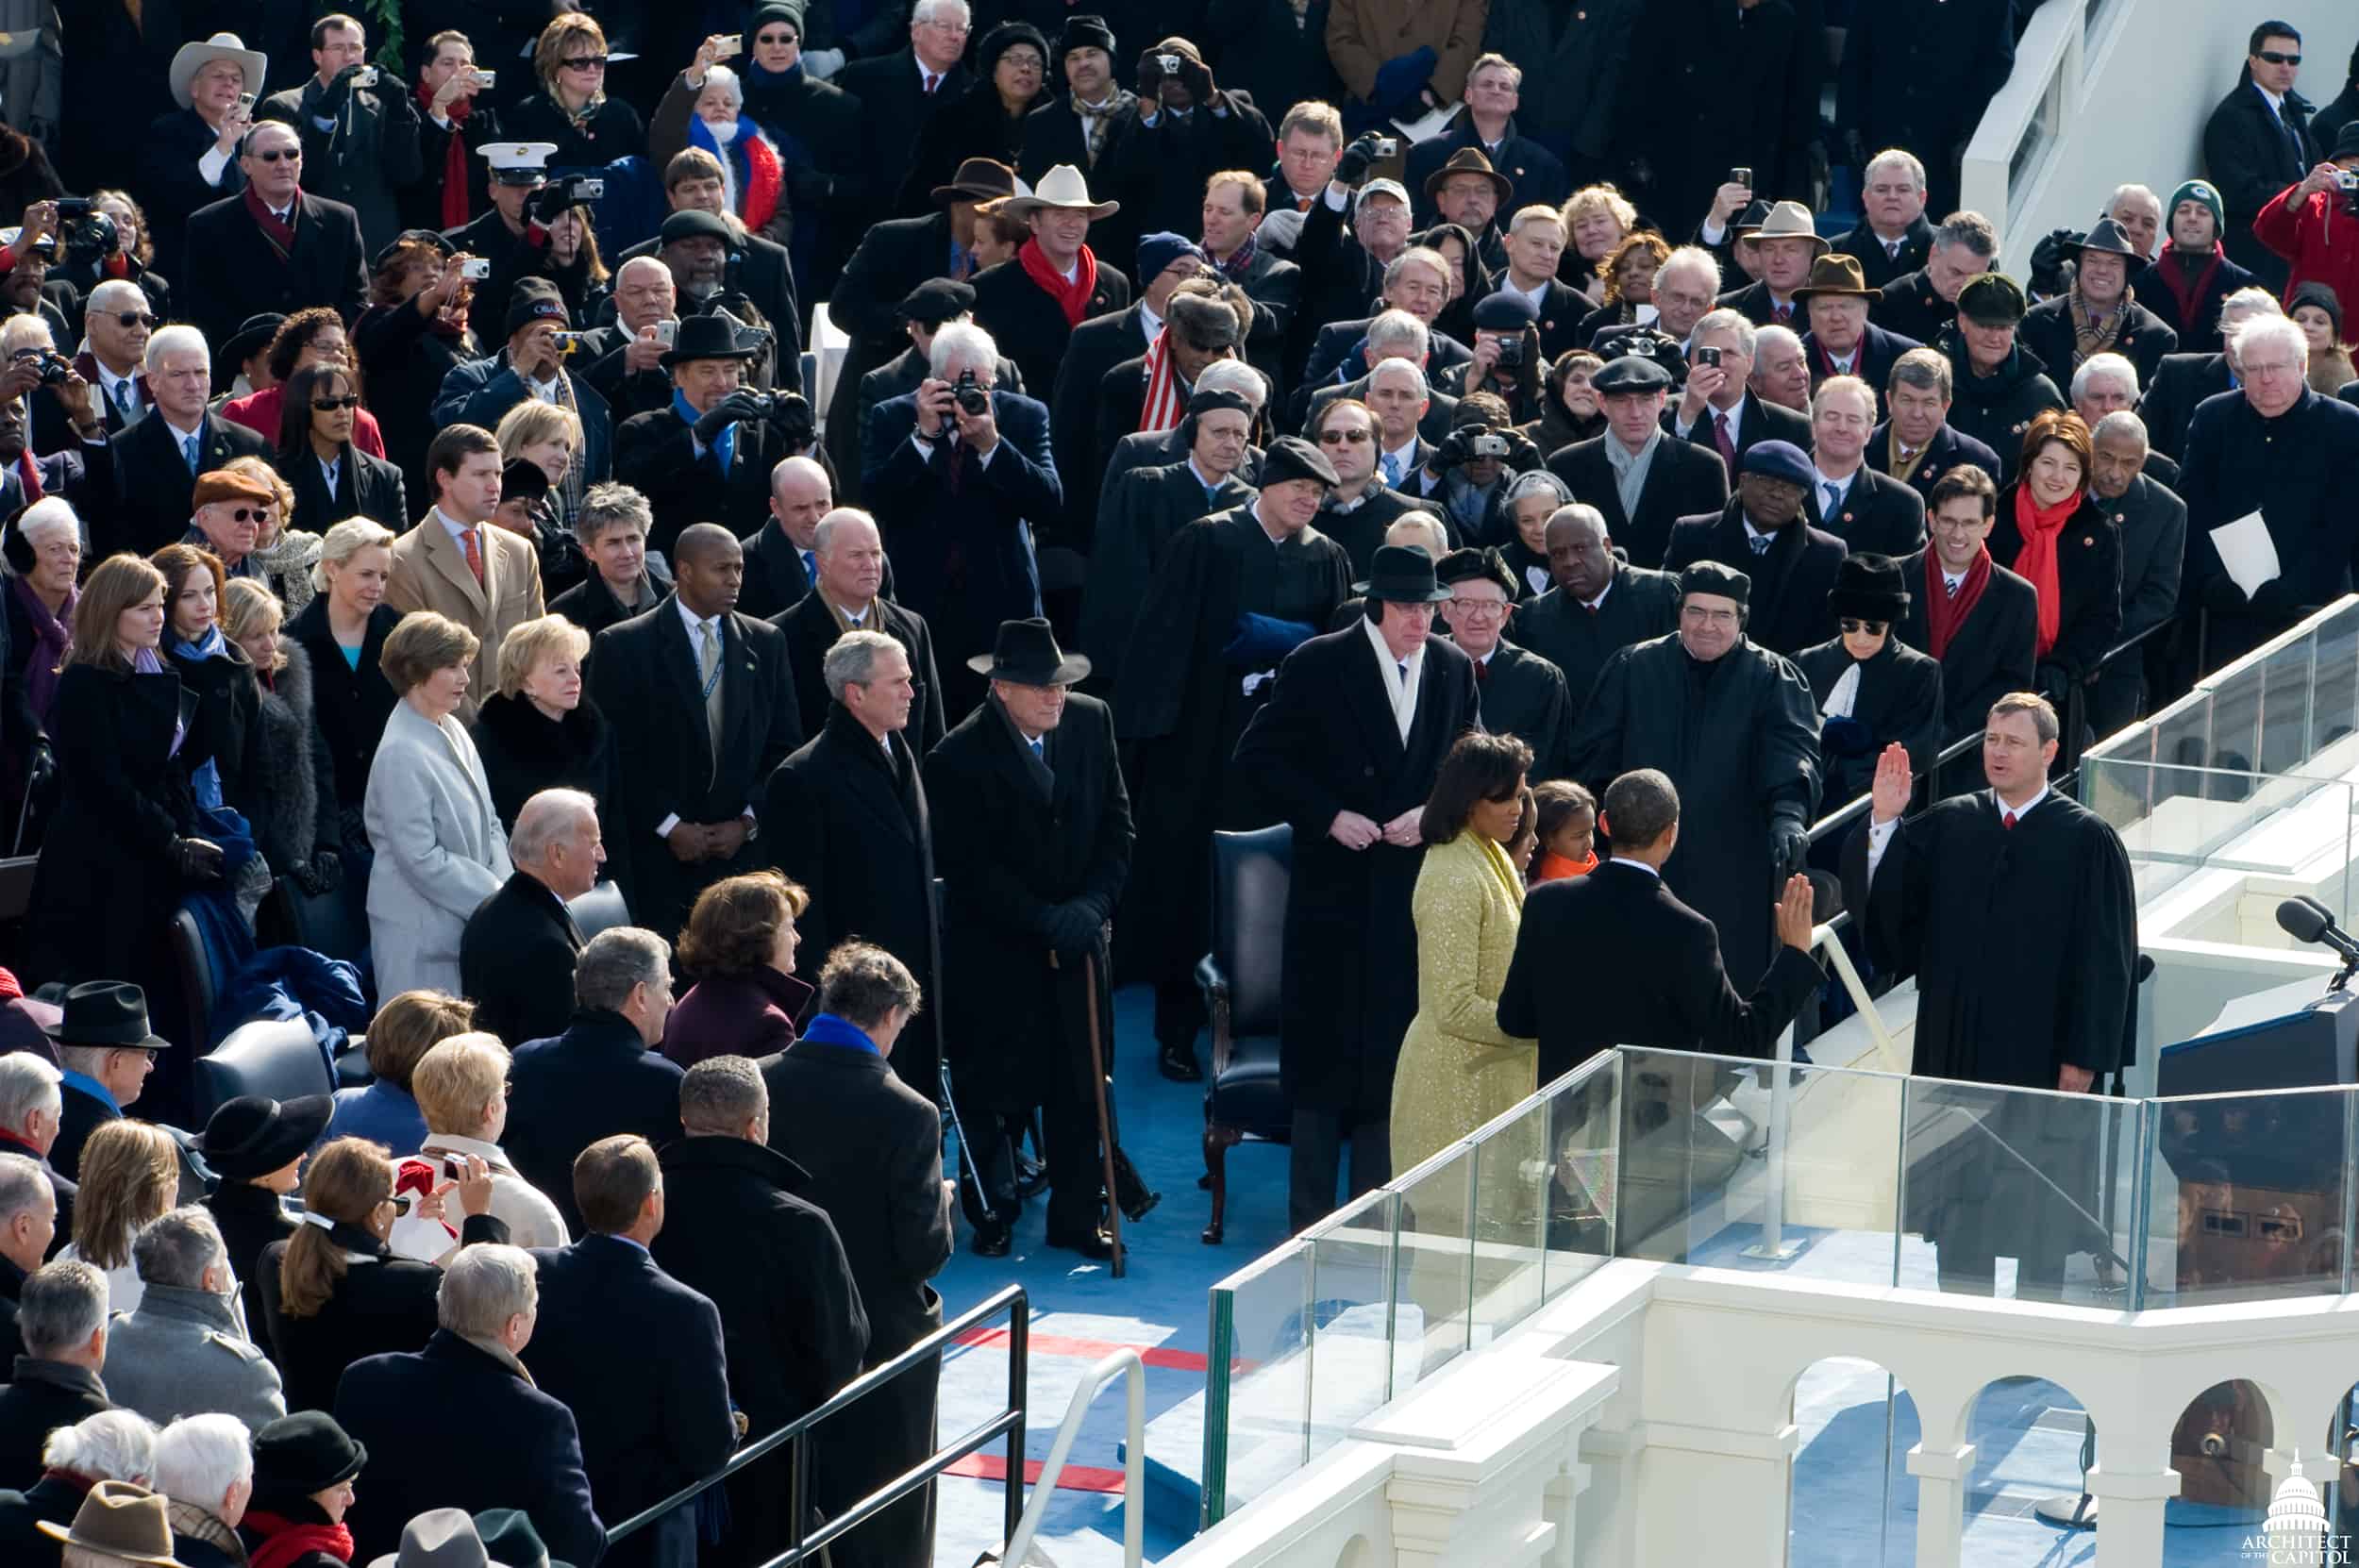 Obama Inauguration 